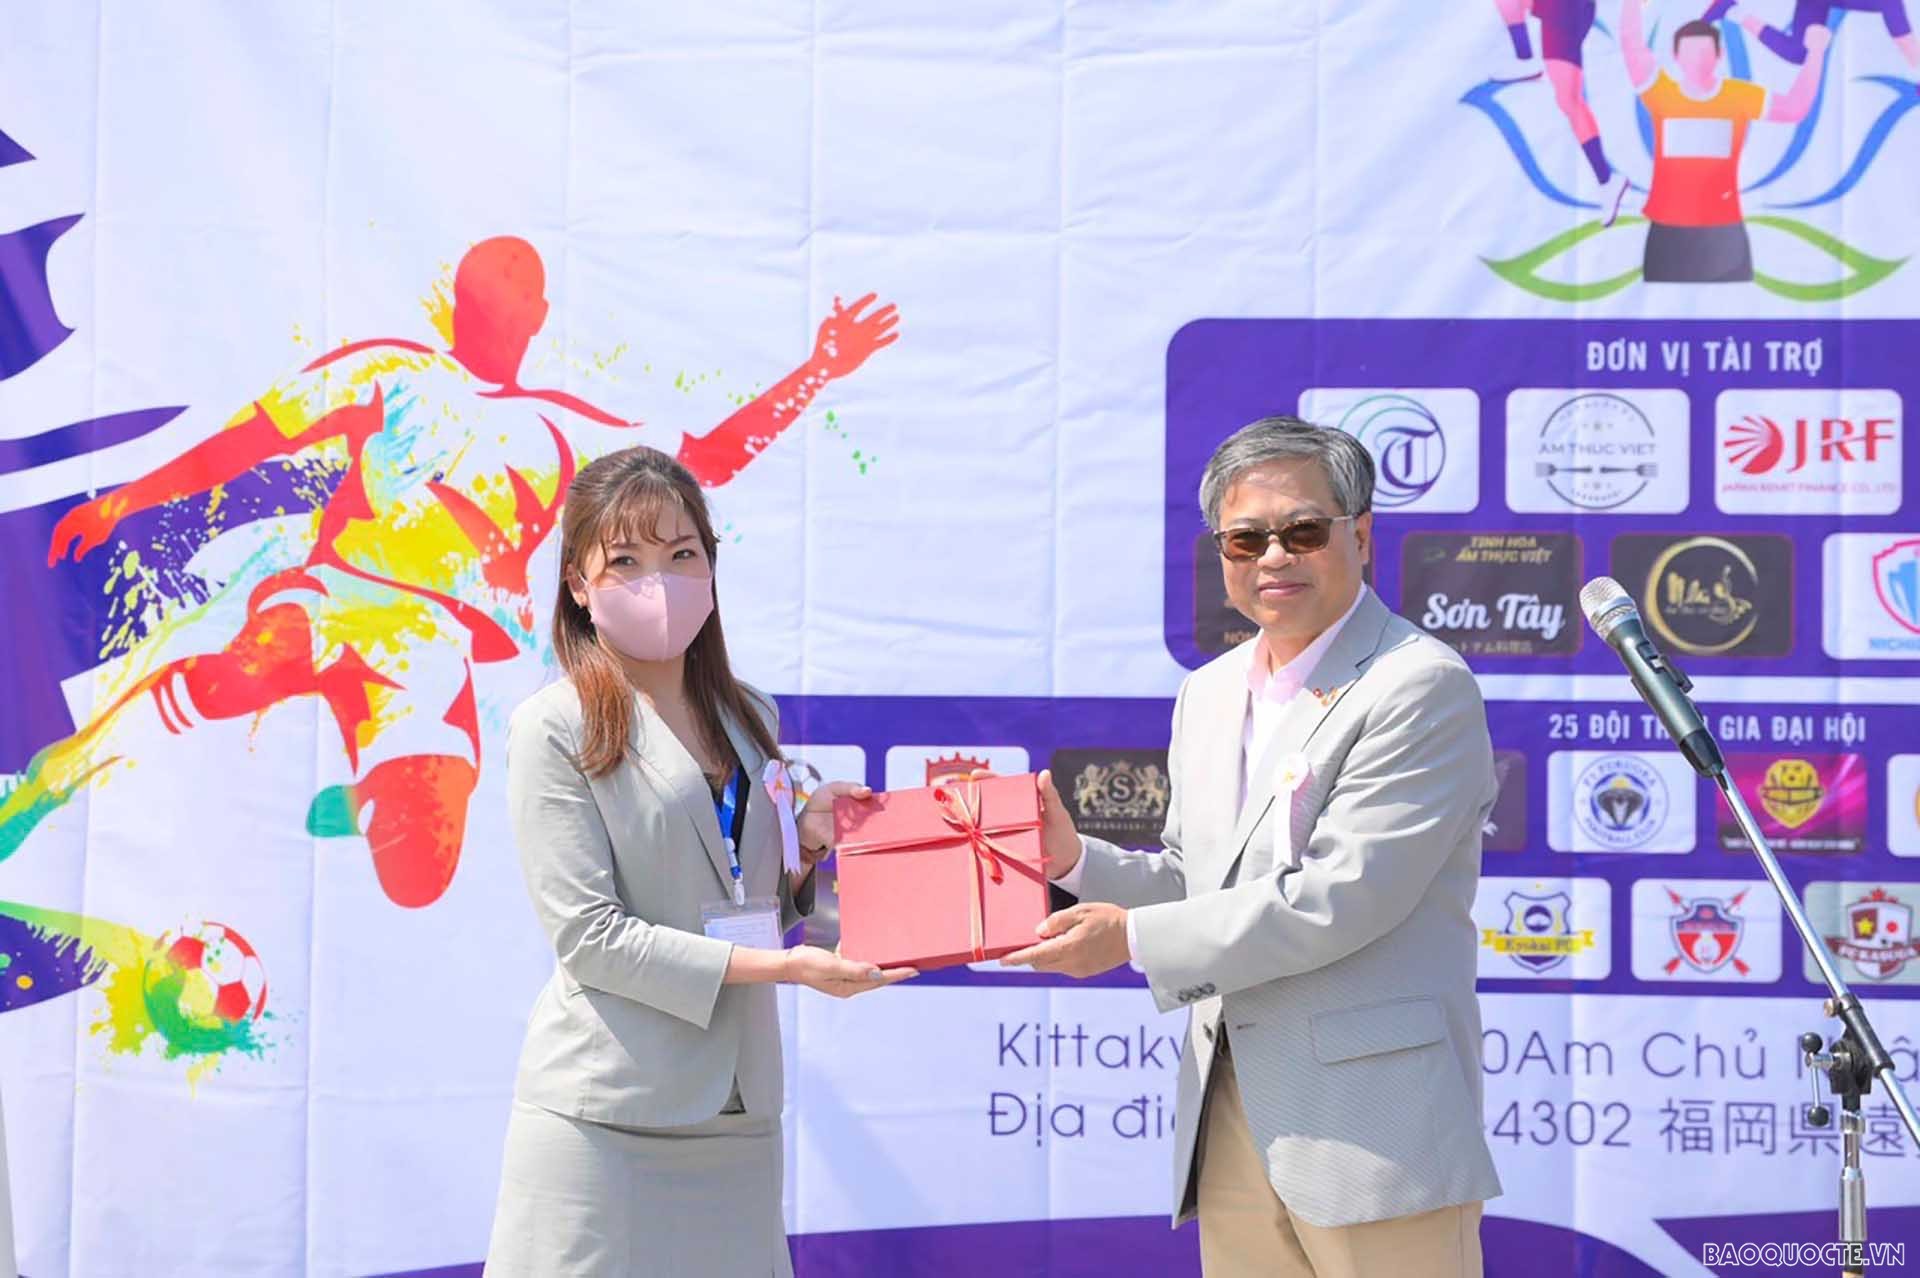 Tổng lãnh sự Vũ Bình tặng quà lưu niệm cho chị Tạ Minh Thu, Chủ tịch VAK, đại diện Ban tổ chức Đại hội thể thao.